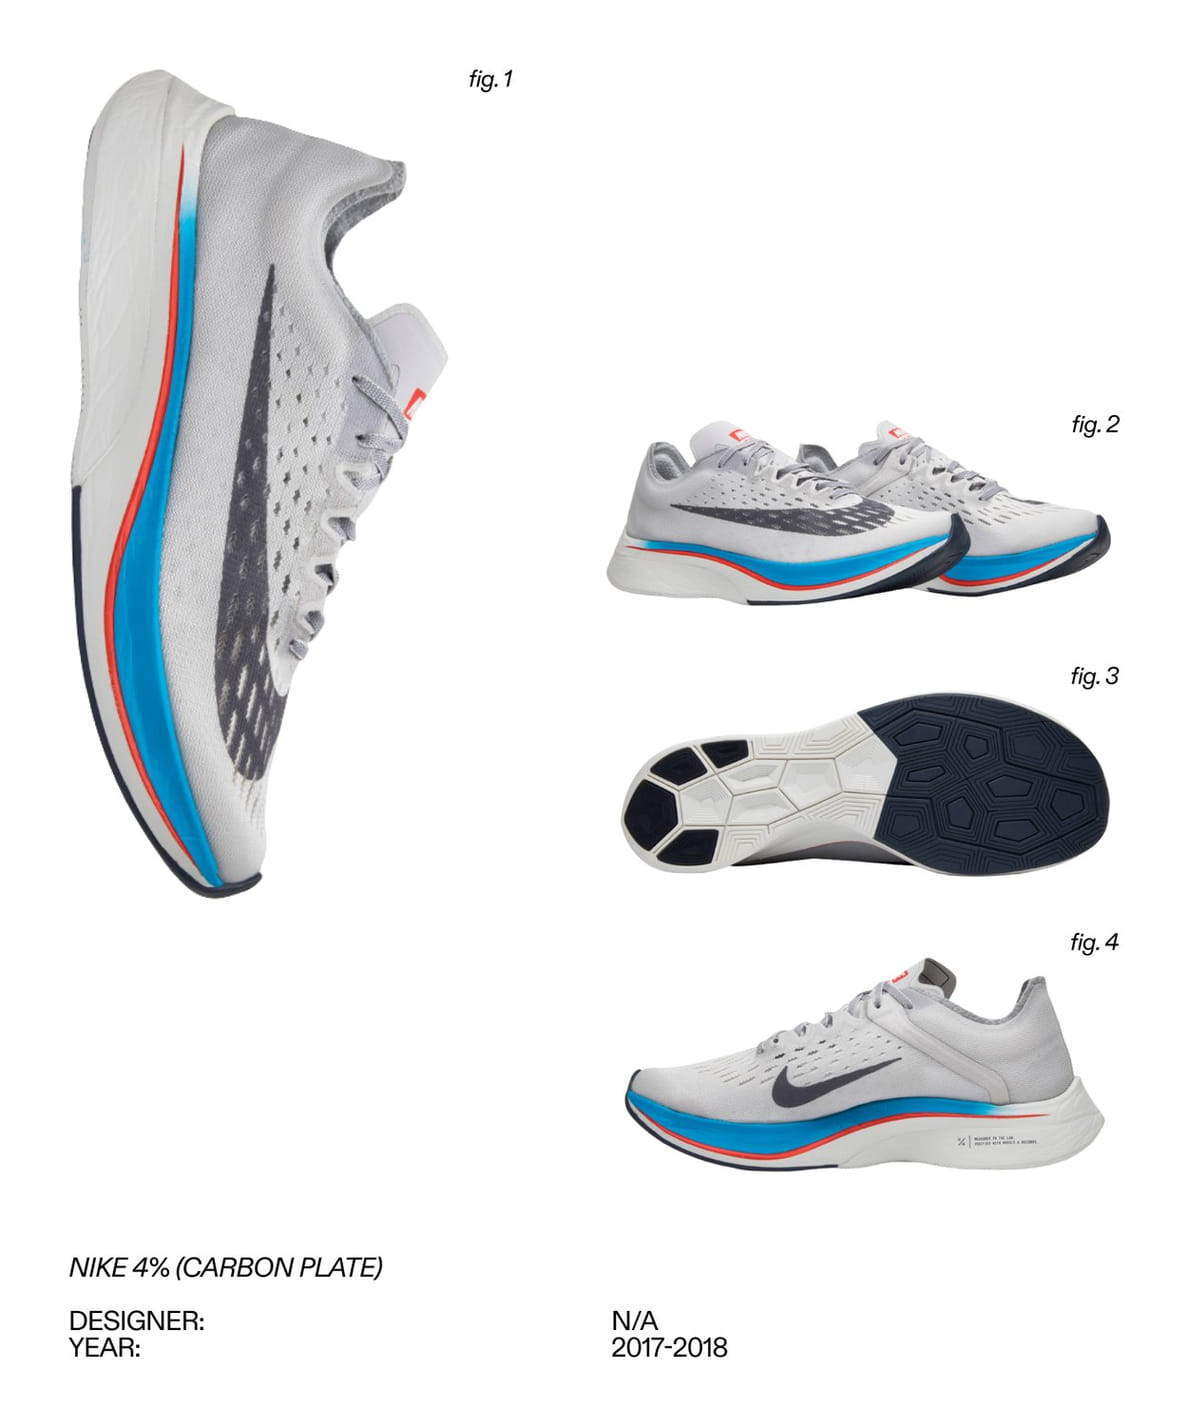 Ot Nike AIR do adidas Boost 11 samyh innovatsionnyh tehnologij v krossovkah za vse vremya 11